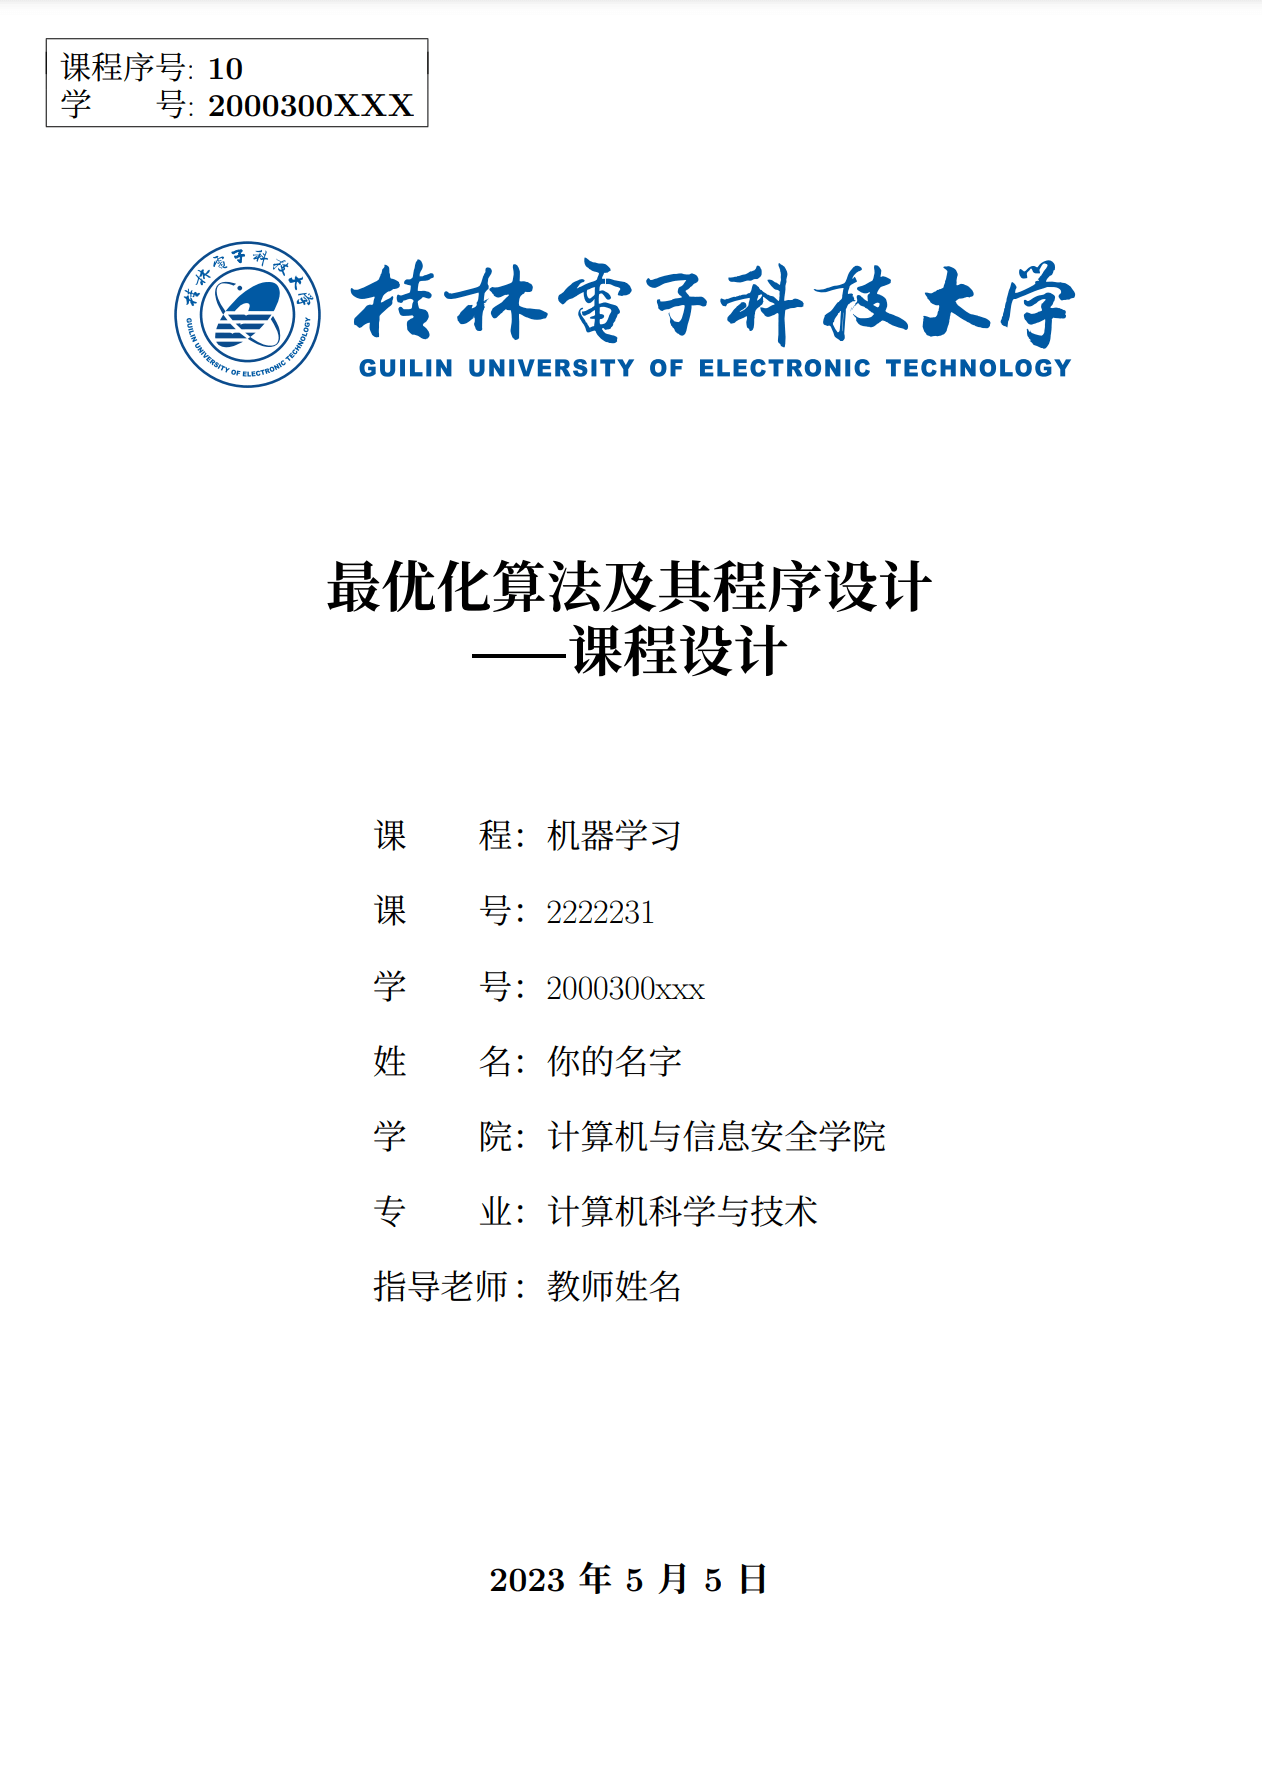 桂林电子科技大学课程(组会)报告 LaTeX 模板